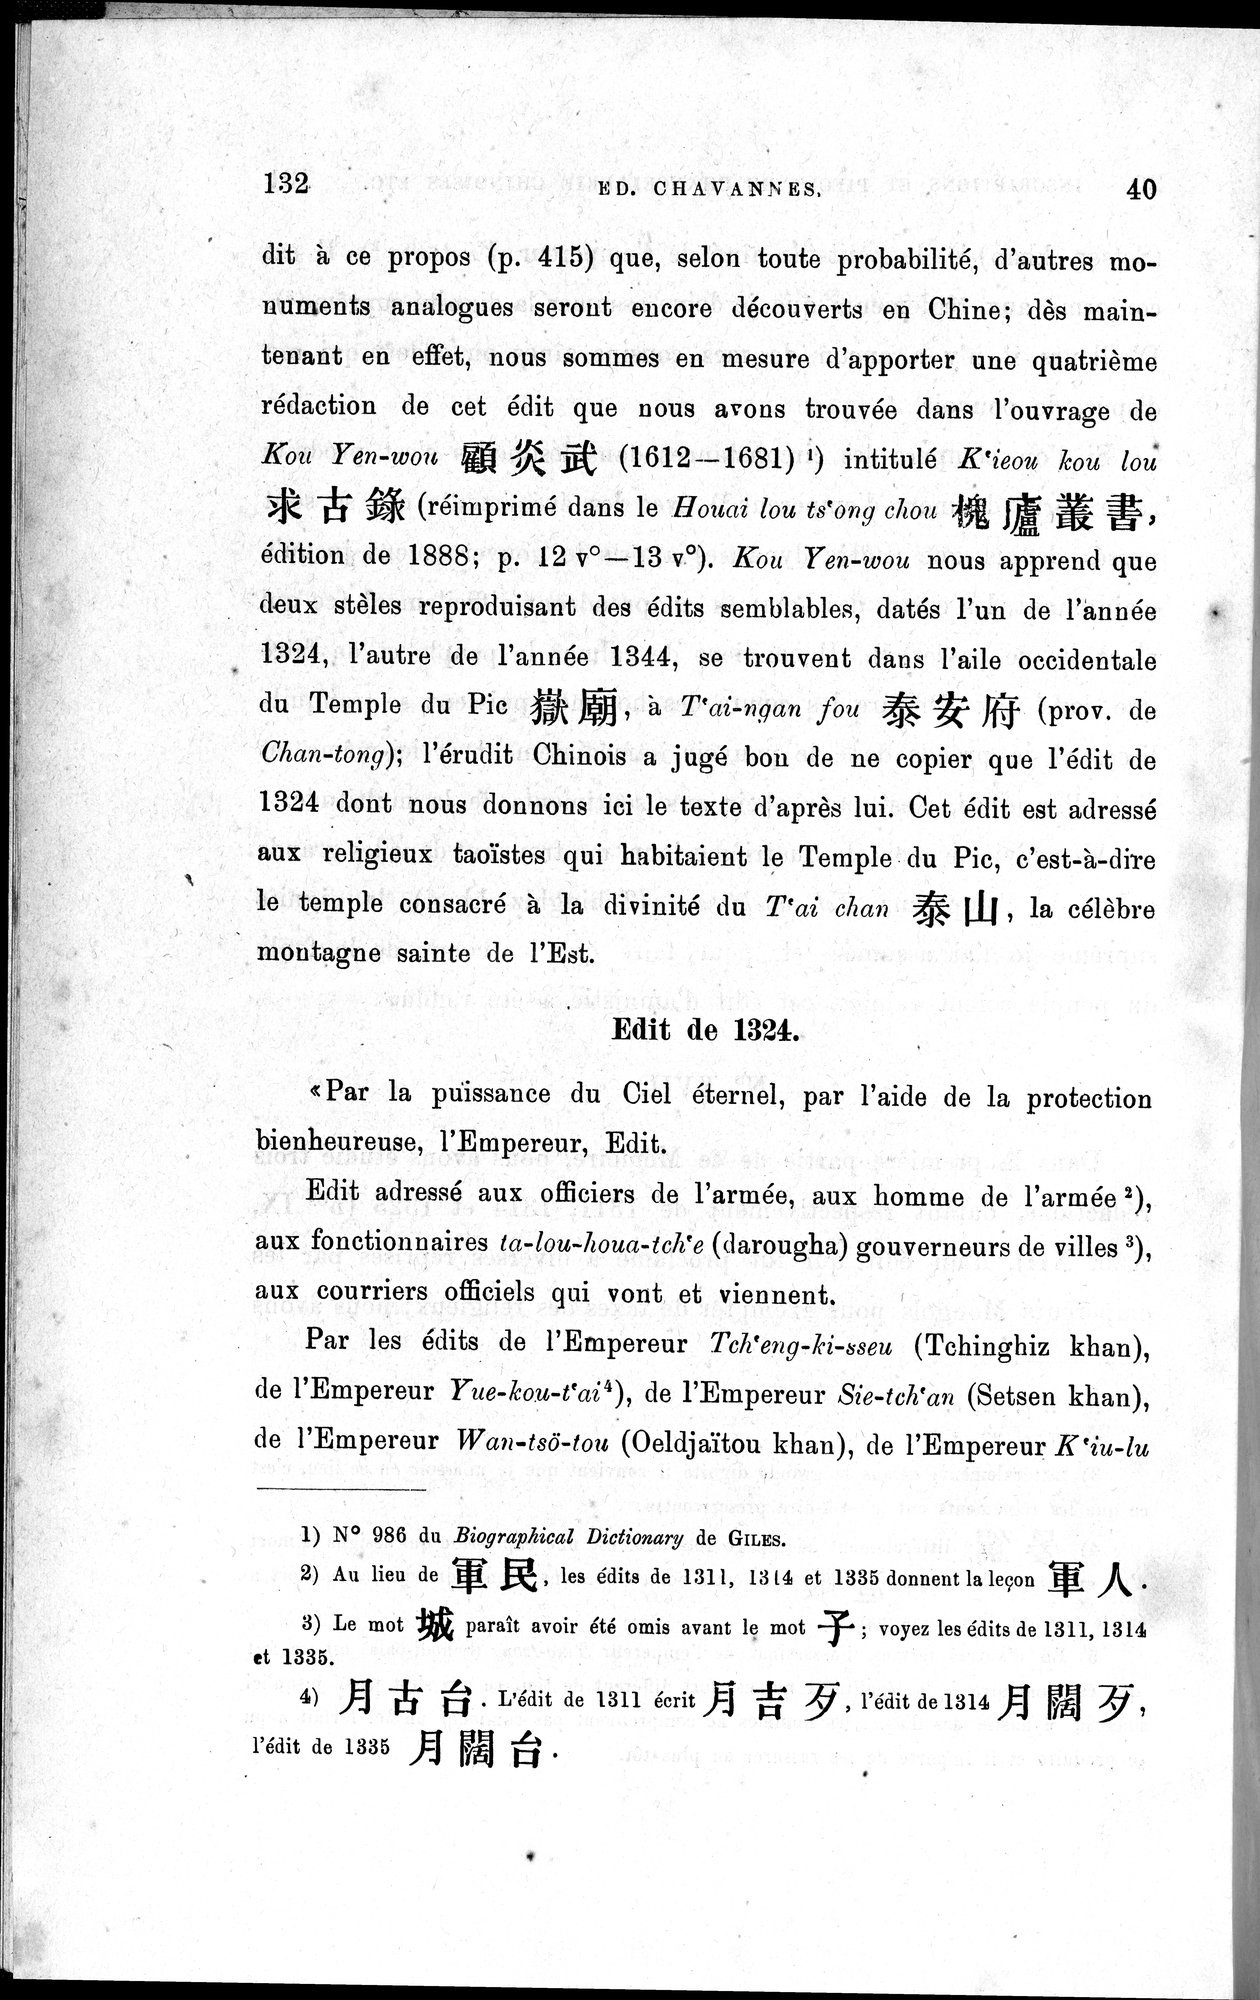 Inscriptions et pièces de Chancellerie Chinoises de l'époque mongol : vol.1 / Page 158 (Grayscale High Resolution Image)